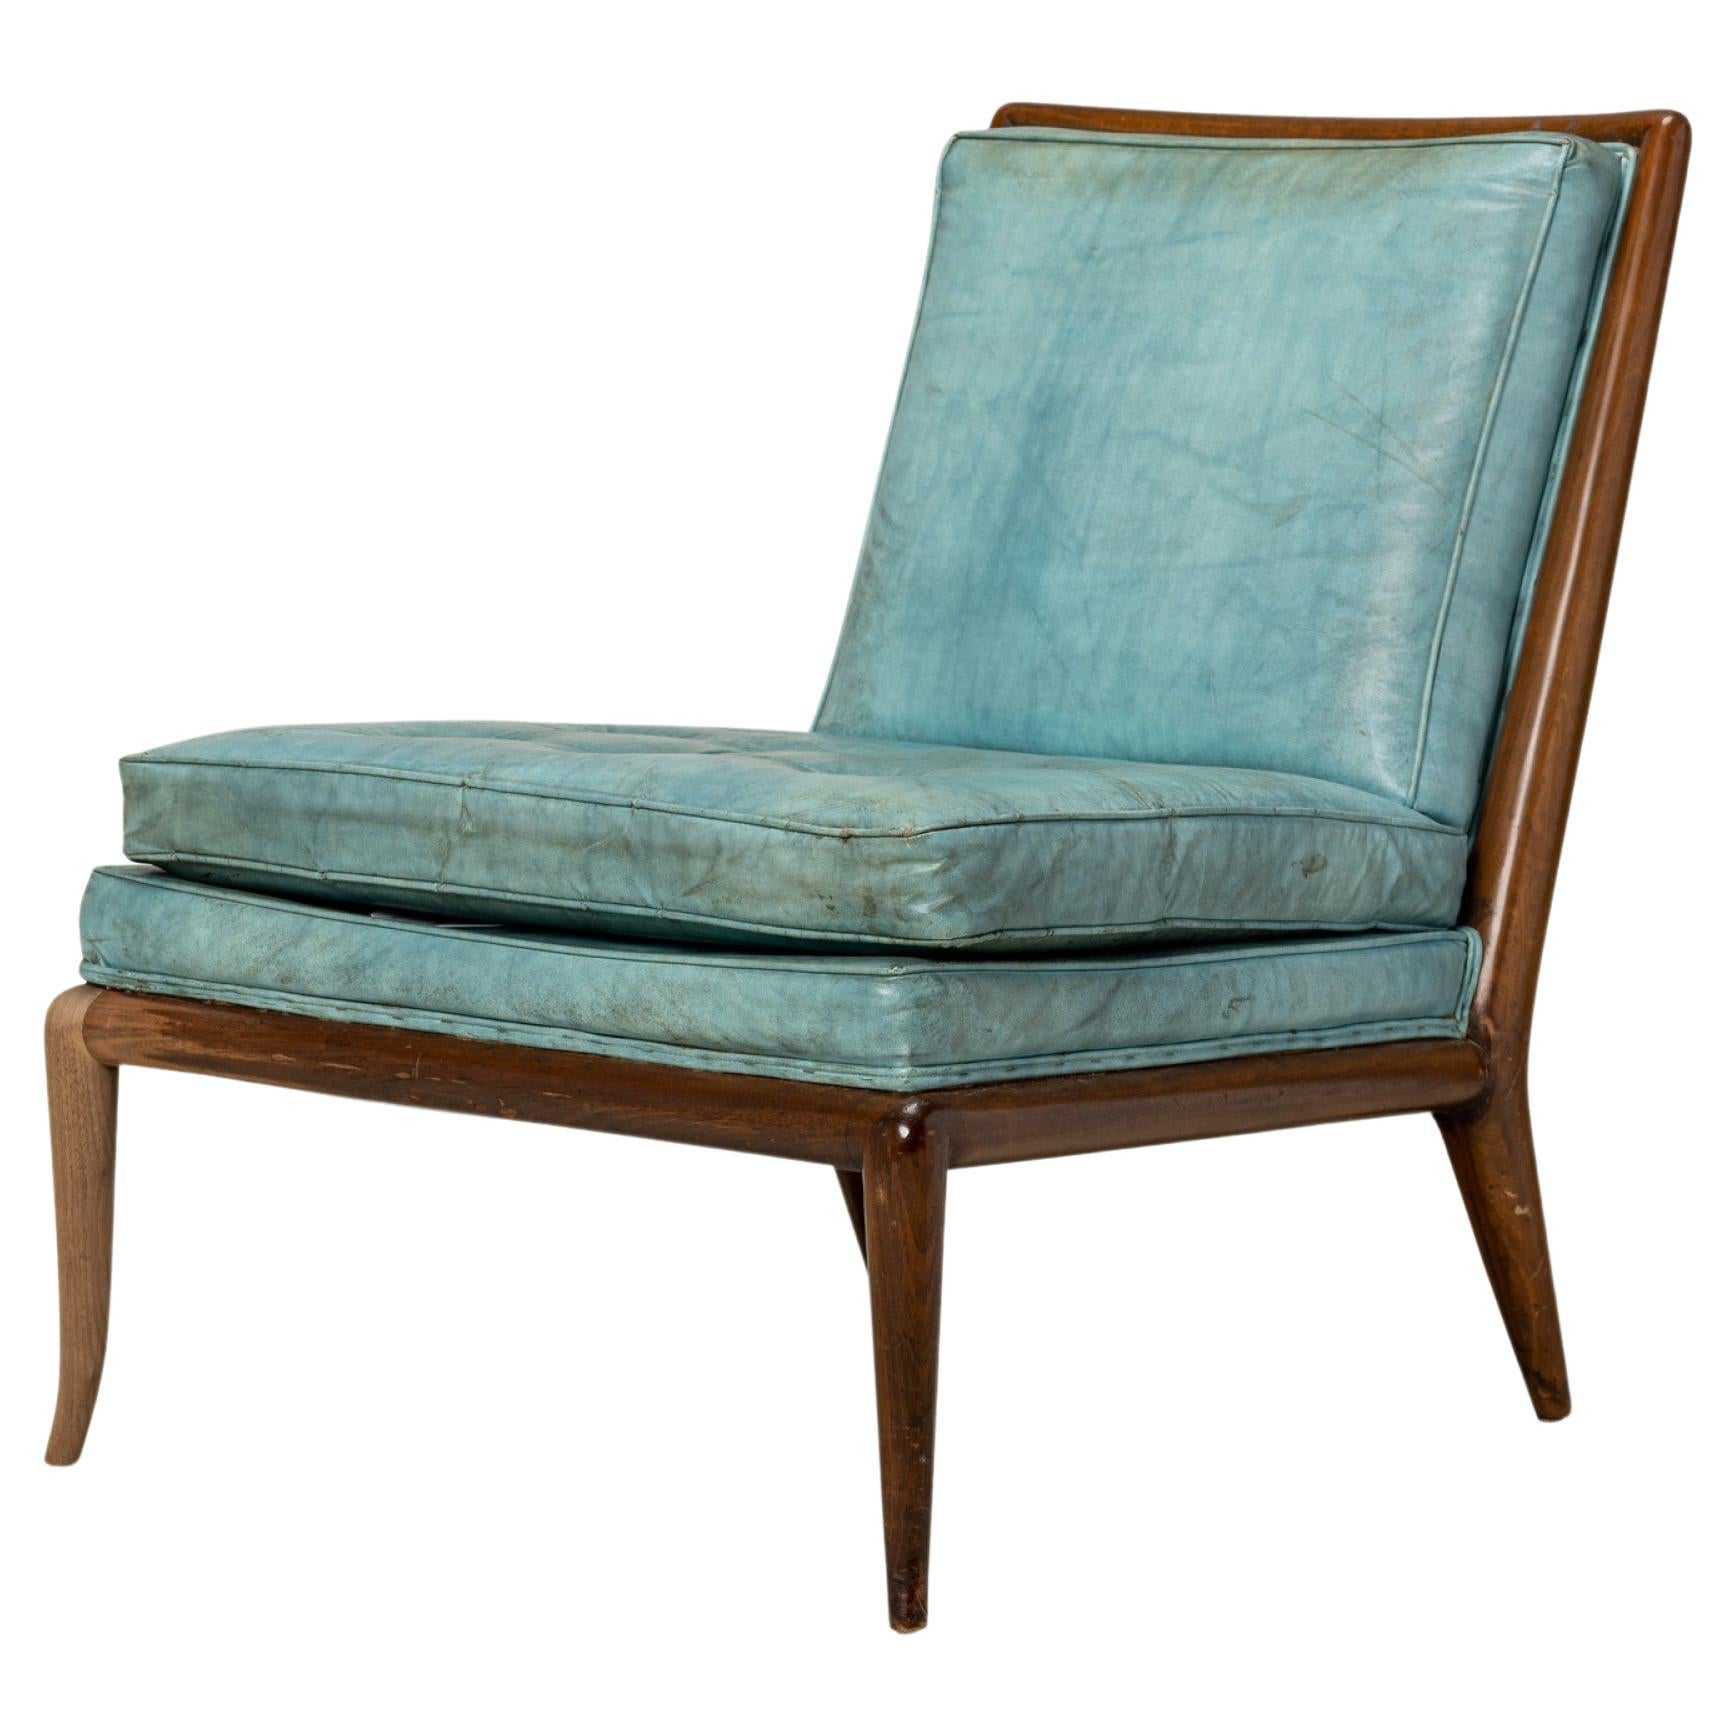 T.H. Robsjohn-Gibbings for Widdicomb Furniture Co. Blue Leather Slipper Chair For Sale